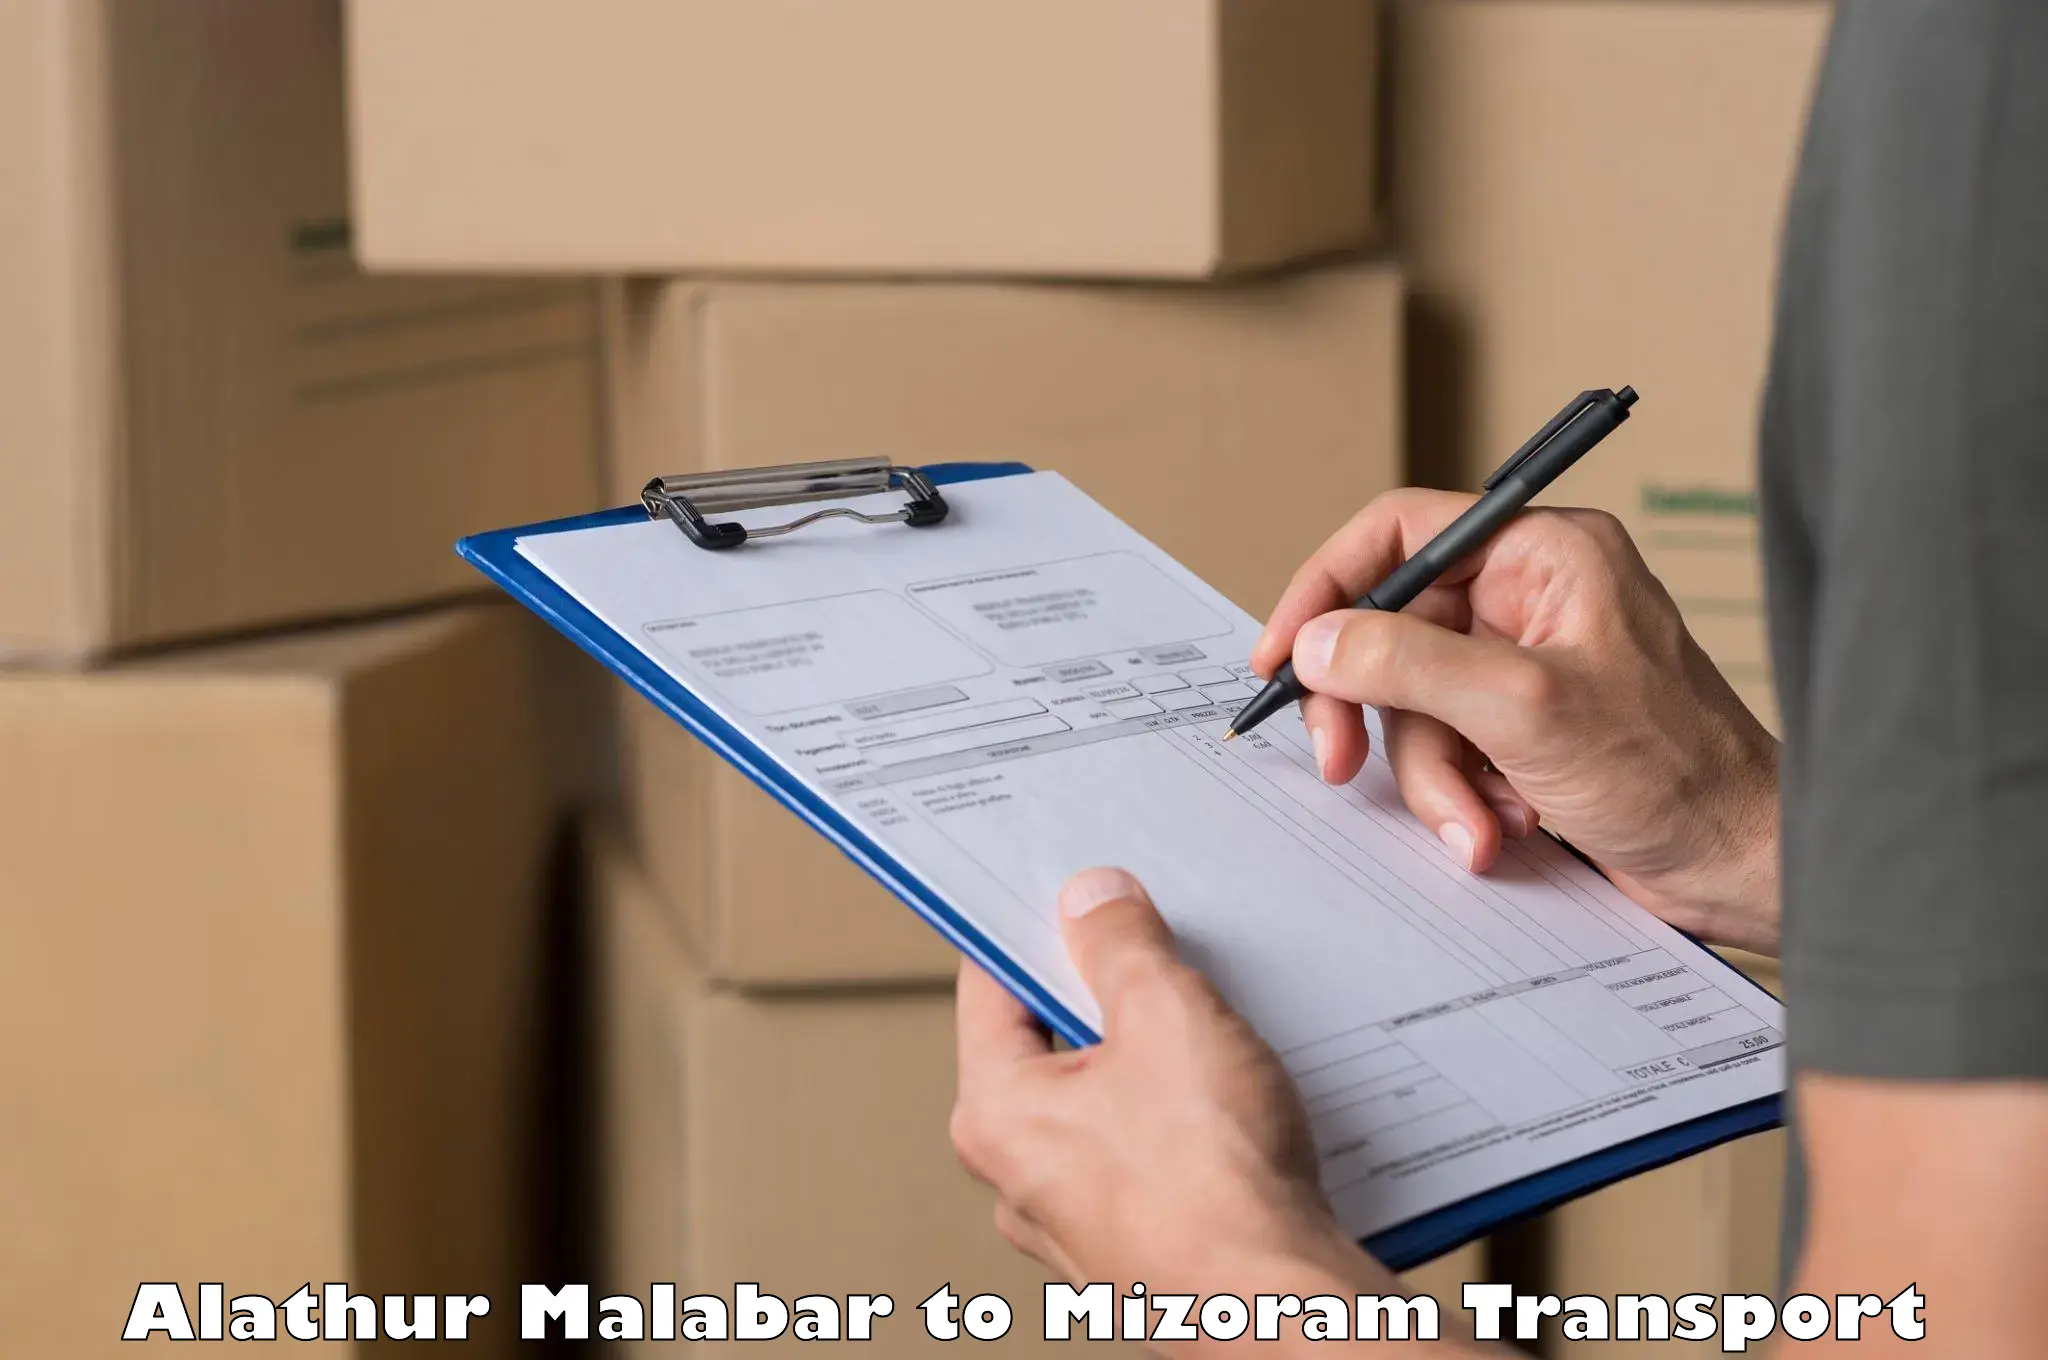 Container transport service Alathur Malabar to Mizoram